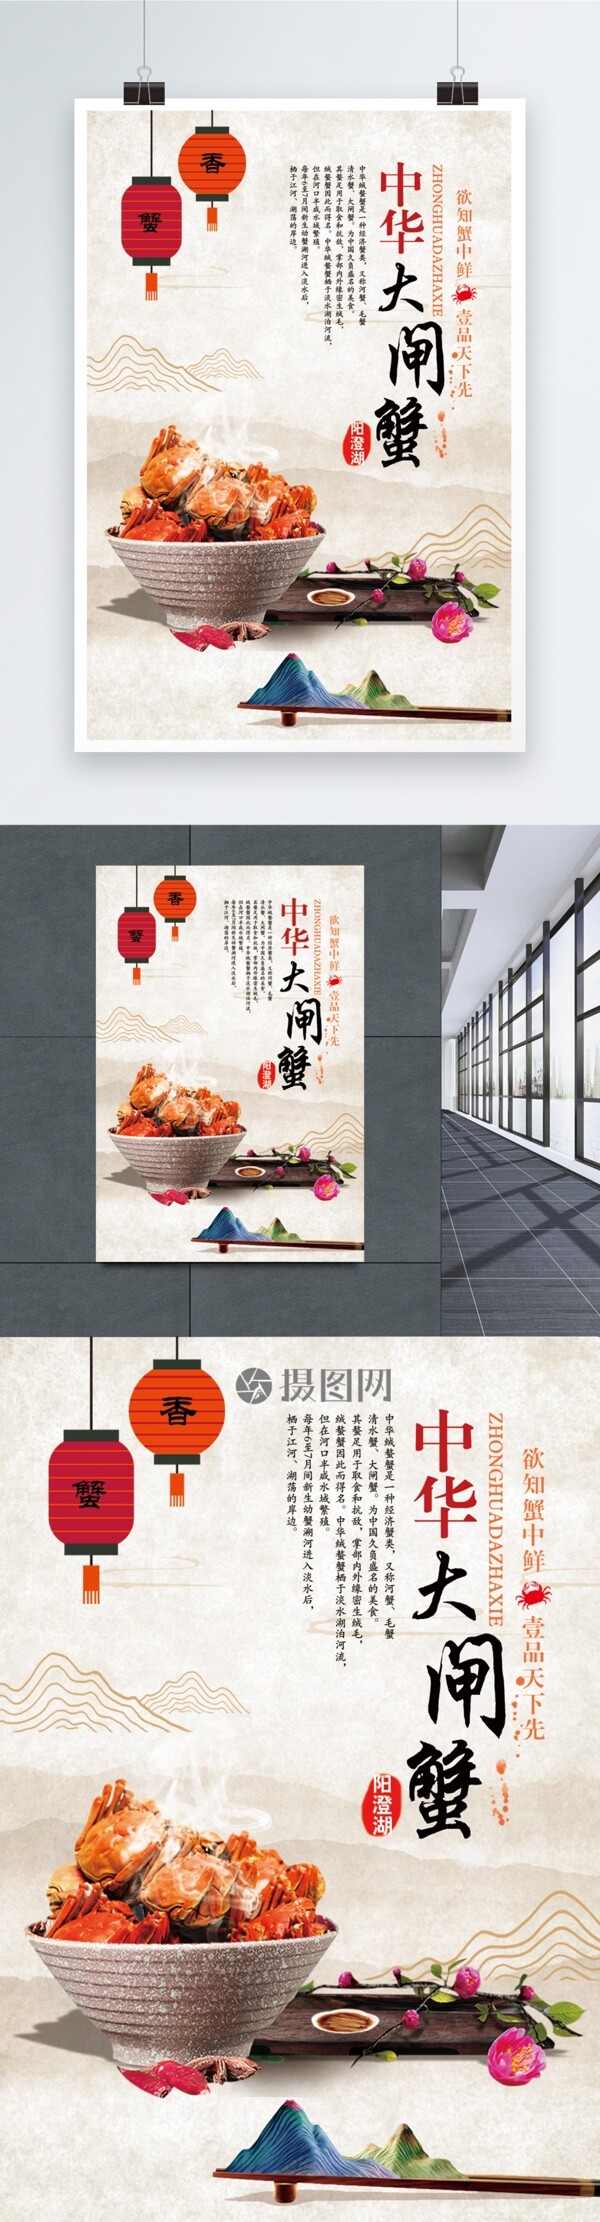 中华大闸蟹美食宣传广告海报